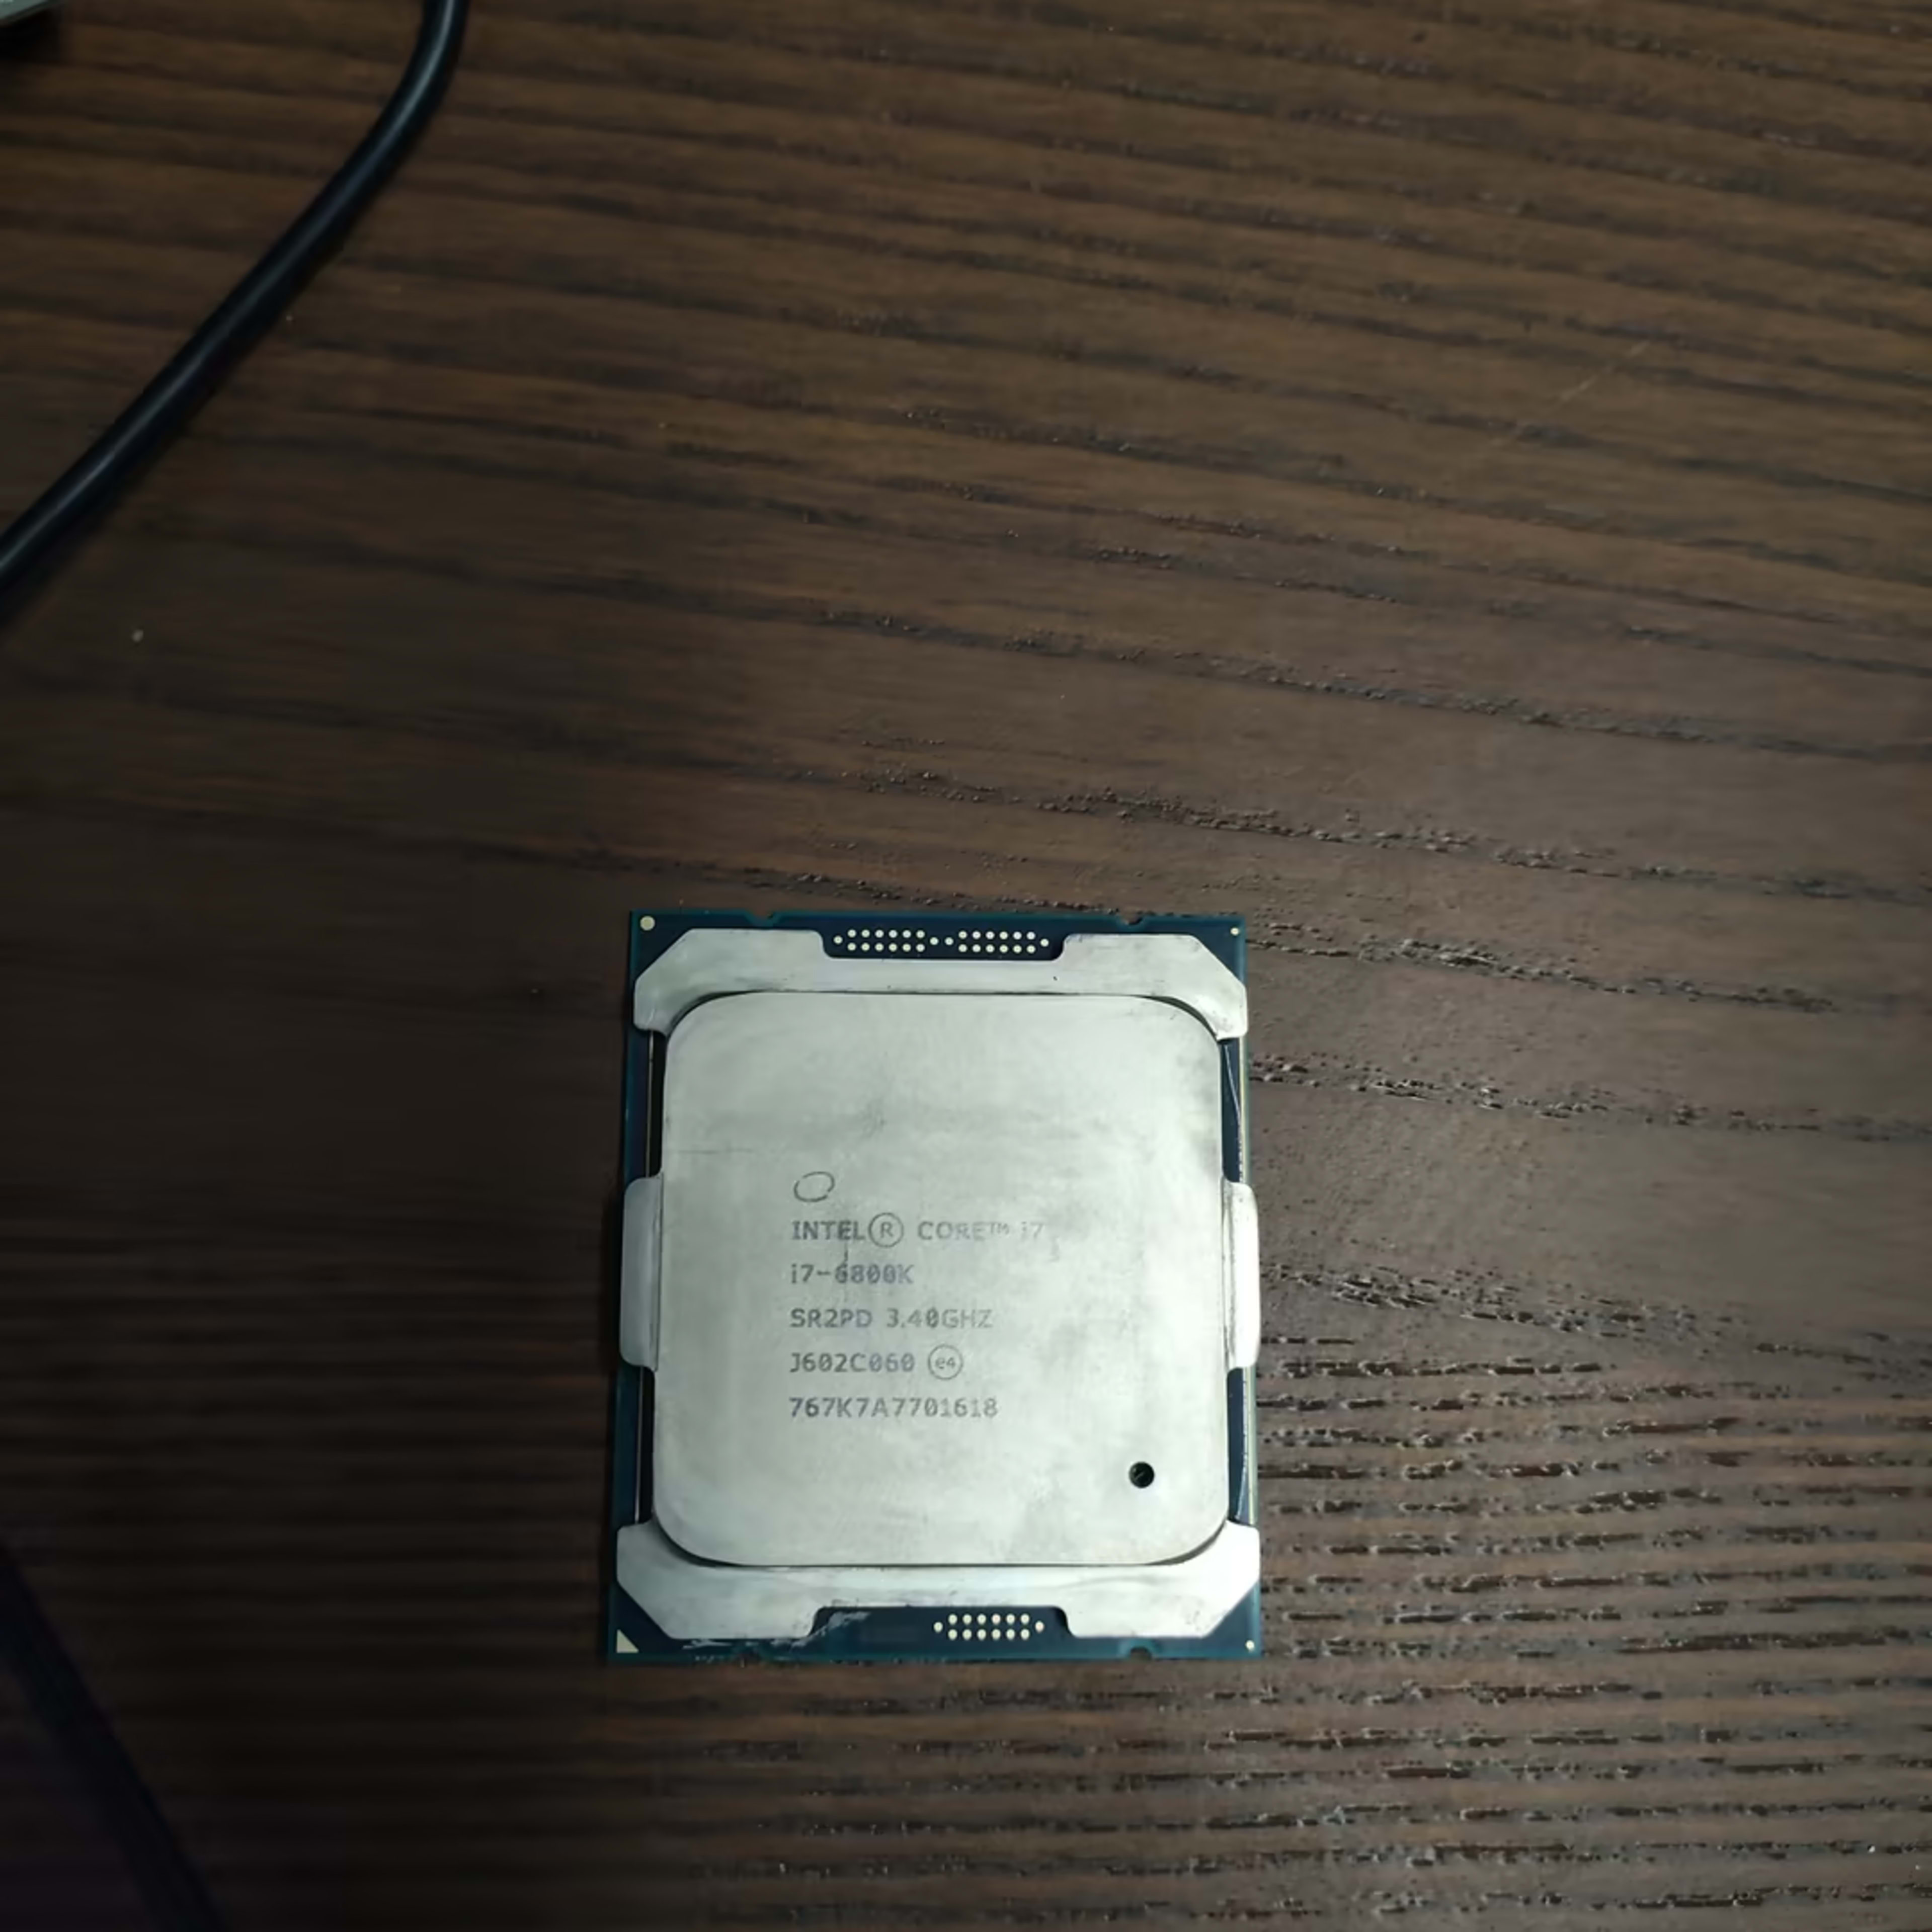 Intel Core i7-6800k CPU